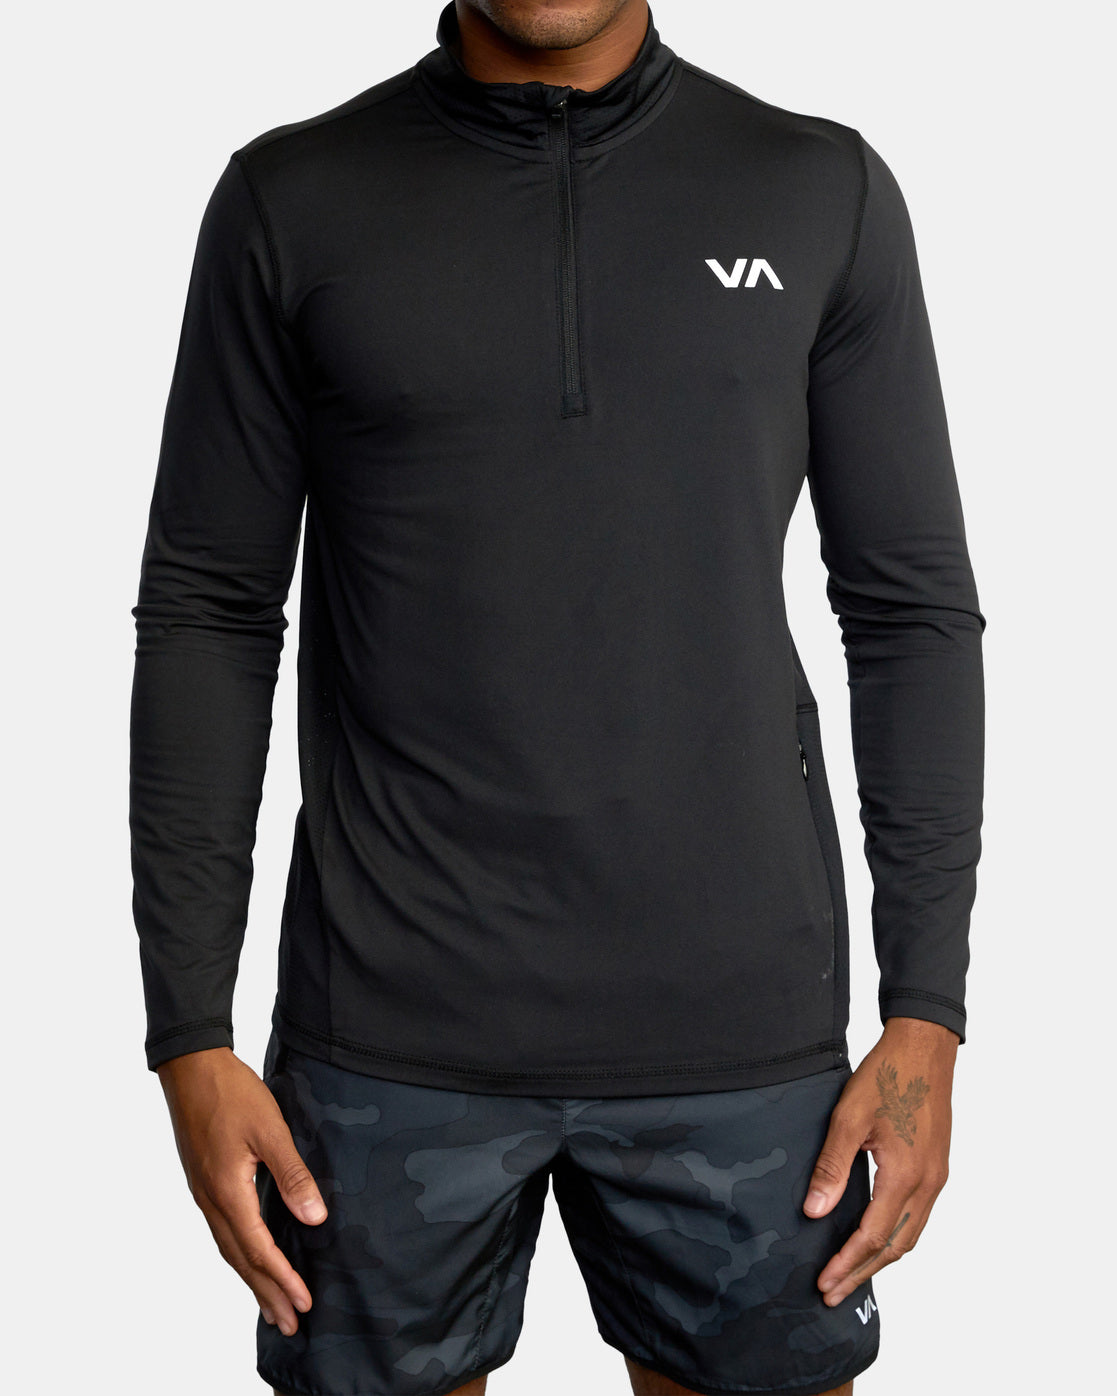 RVCA VA Sport Vent LS Top Half Zip Workout Shirt -Black Mens T Shirt